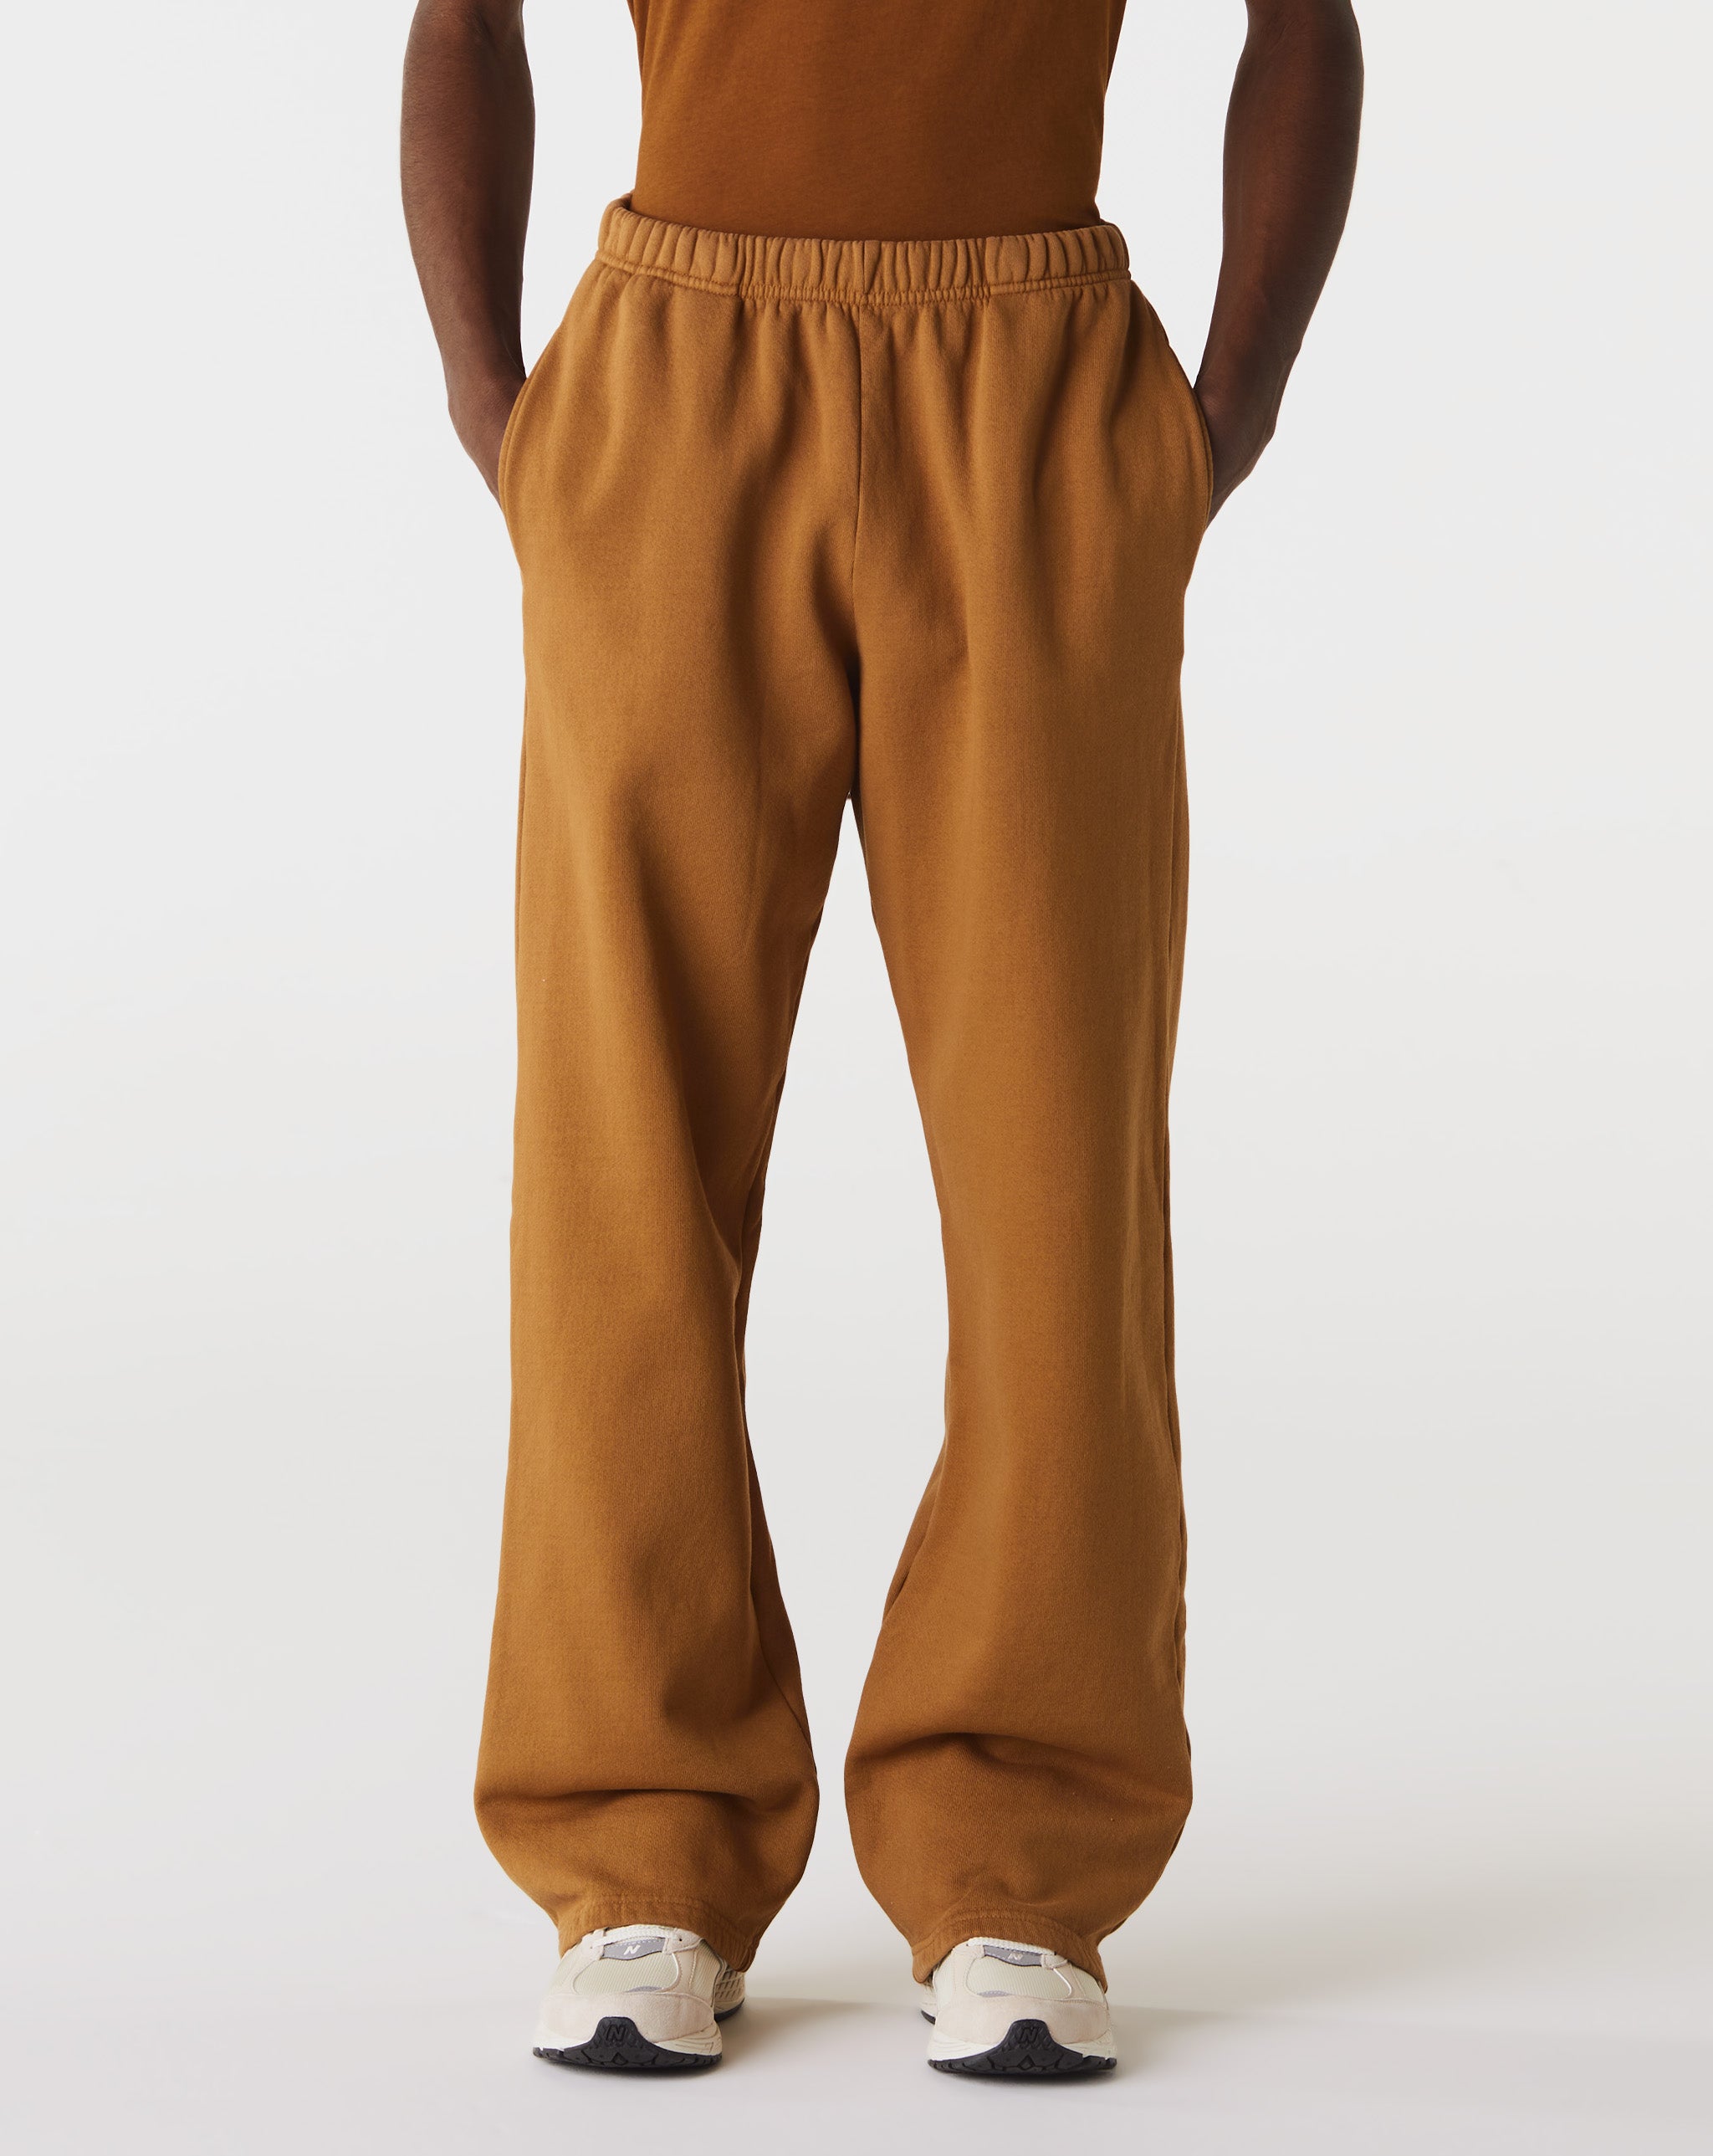 Les Tien Puddle Pants  - Cheap Urlfreeze Jordan outlet